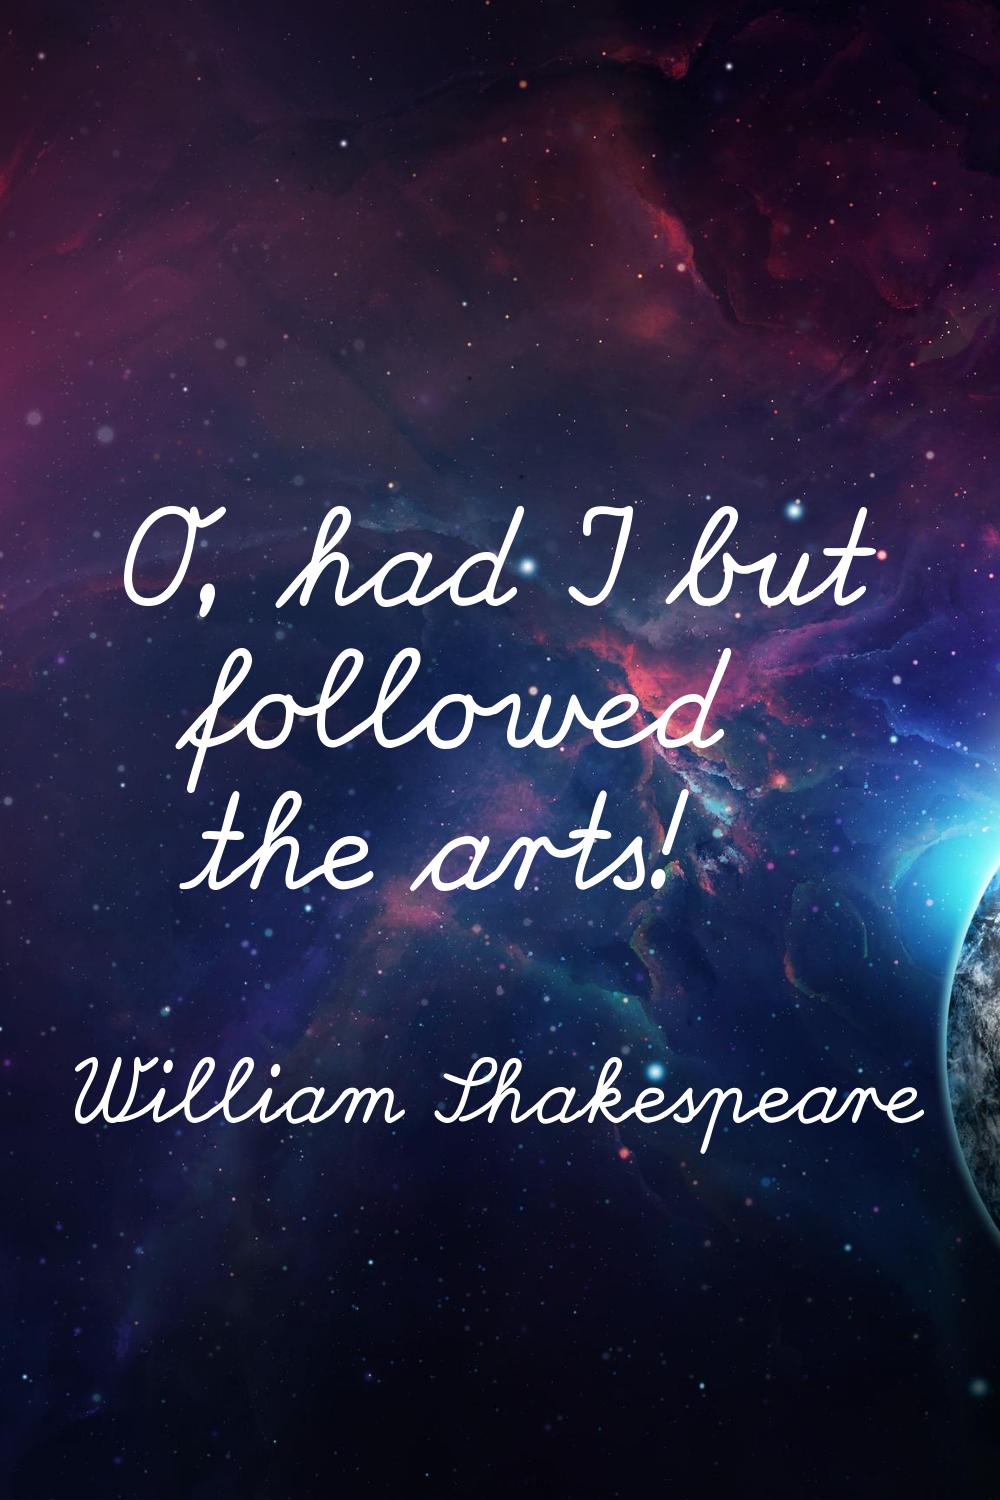 O, had I but followed the arts!